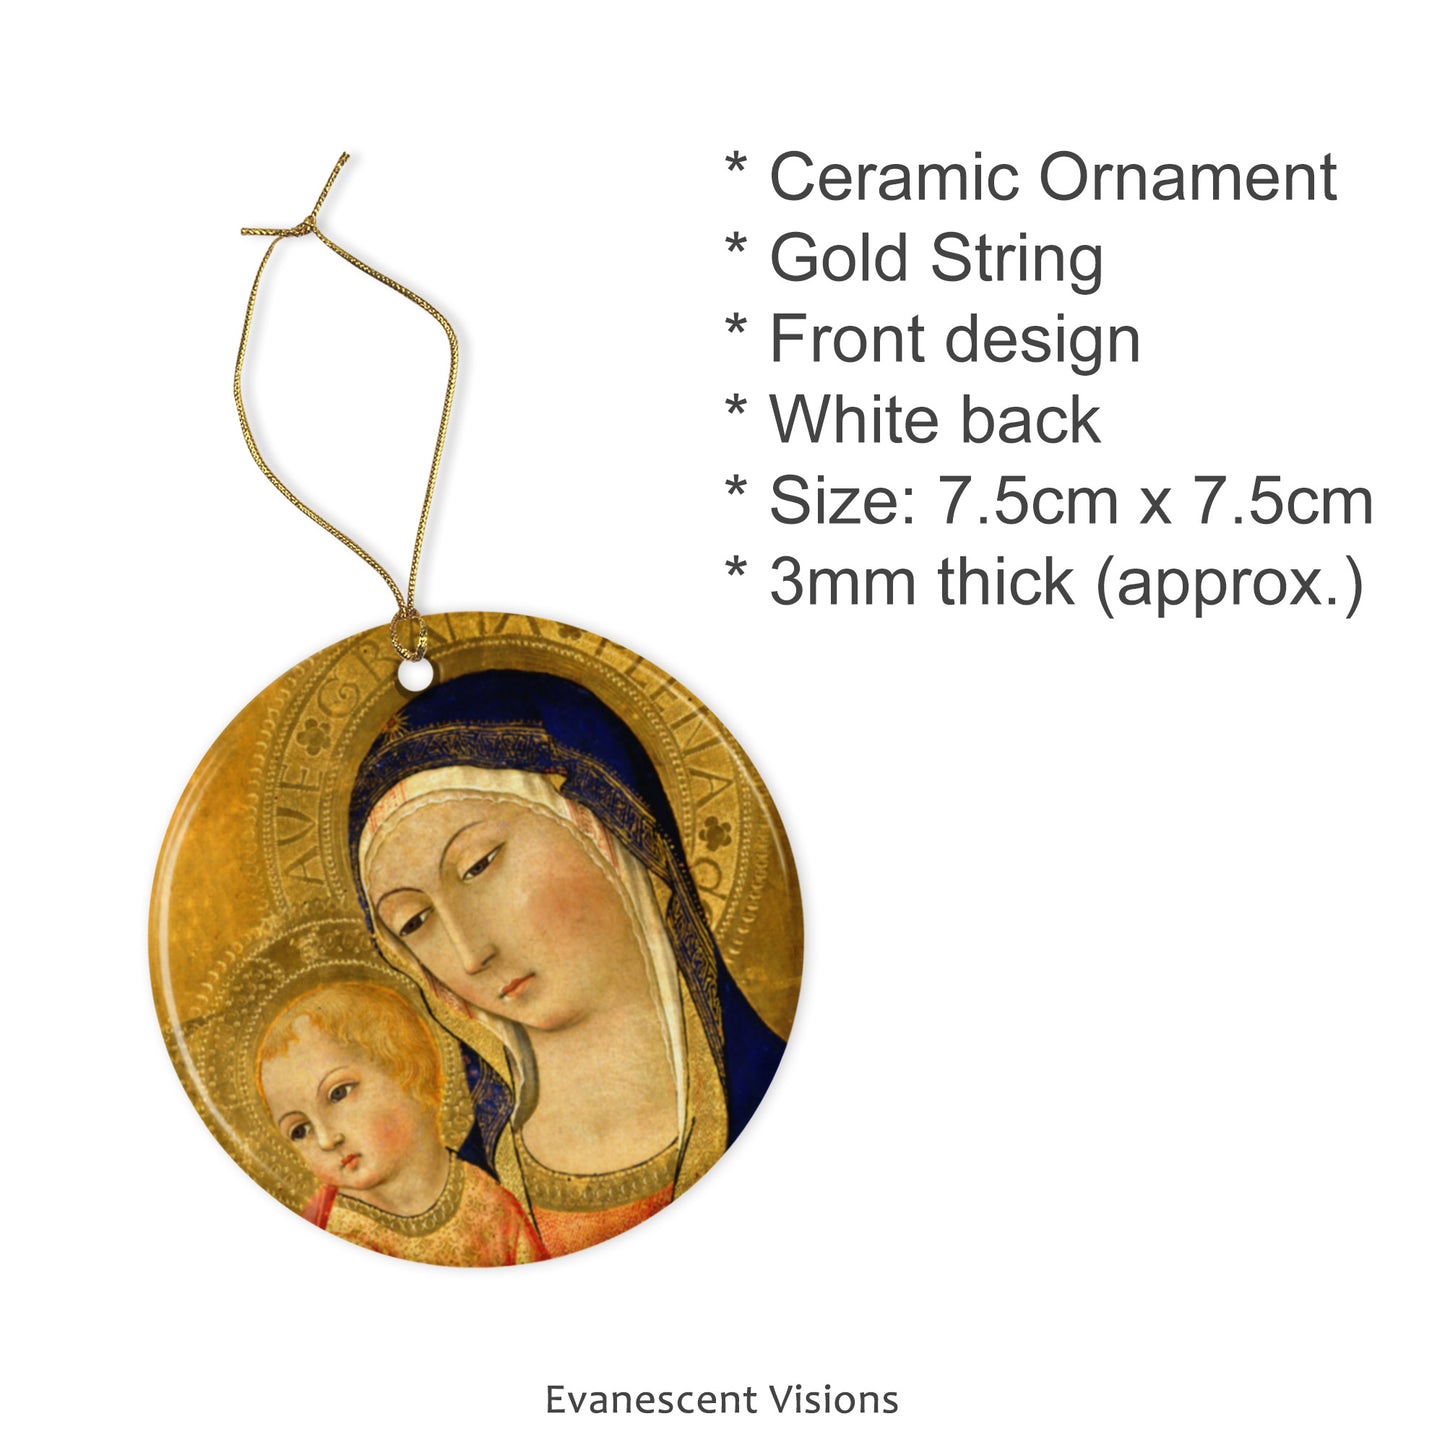 Ceramic Christmas ornament description and details